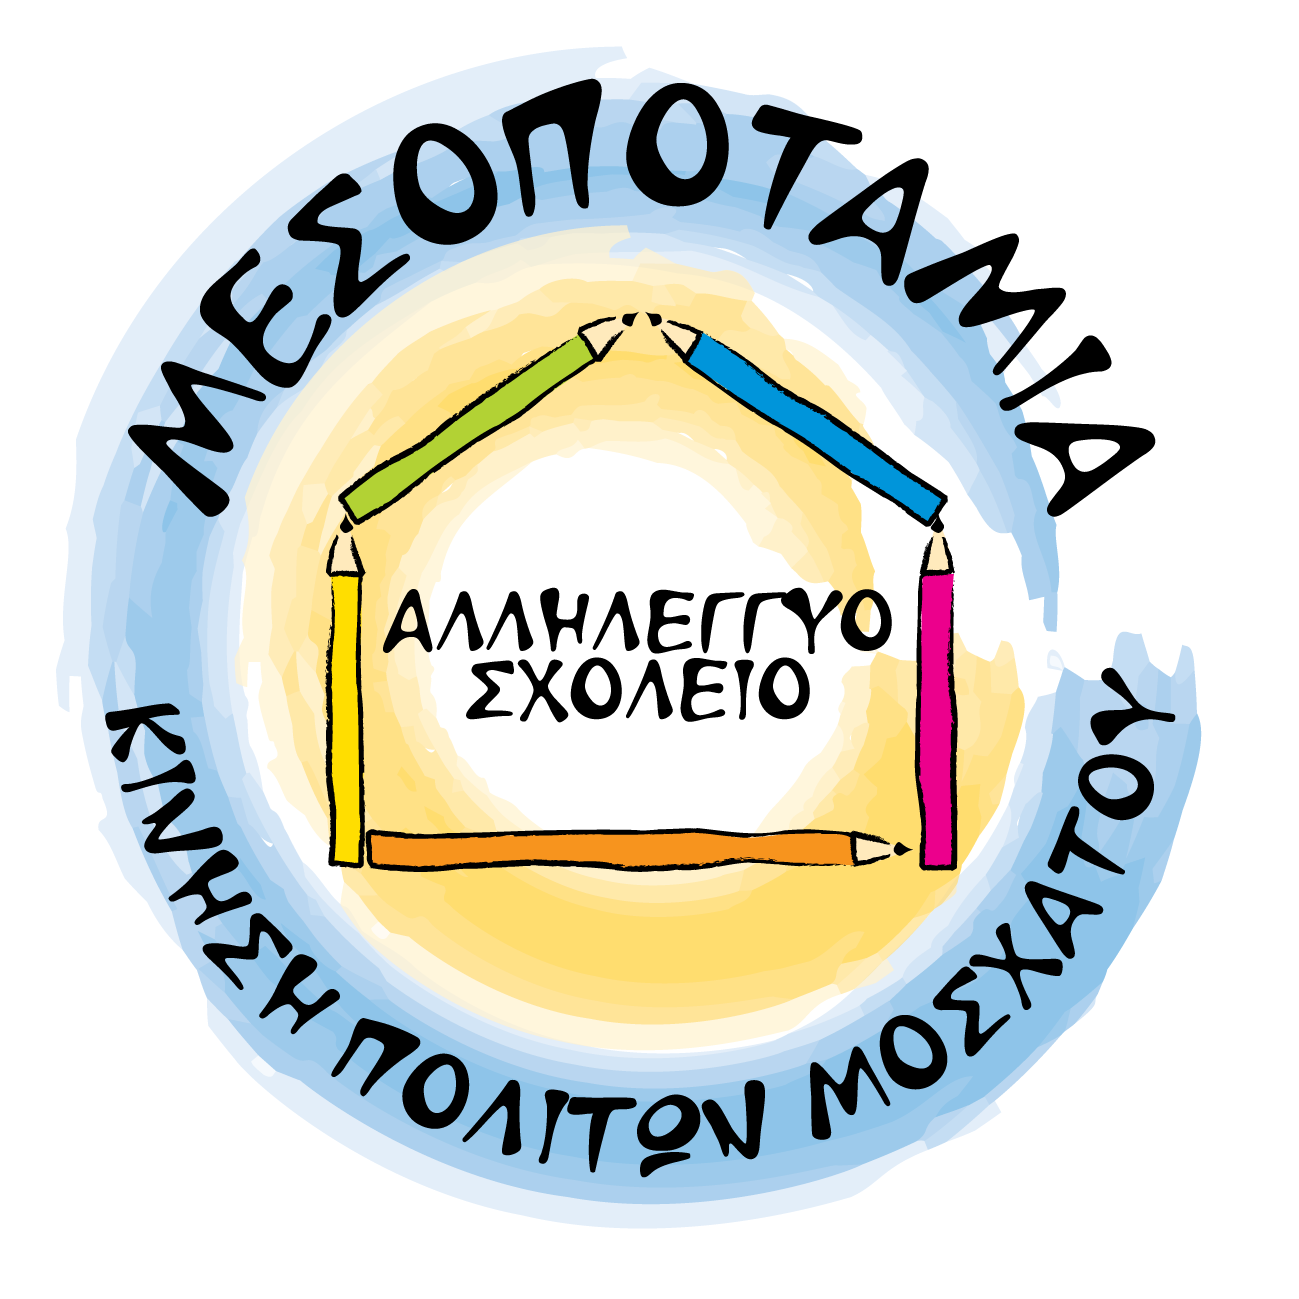 Αλληλέγγυο Σχολείο Μεσοποταμίας logo